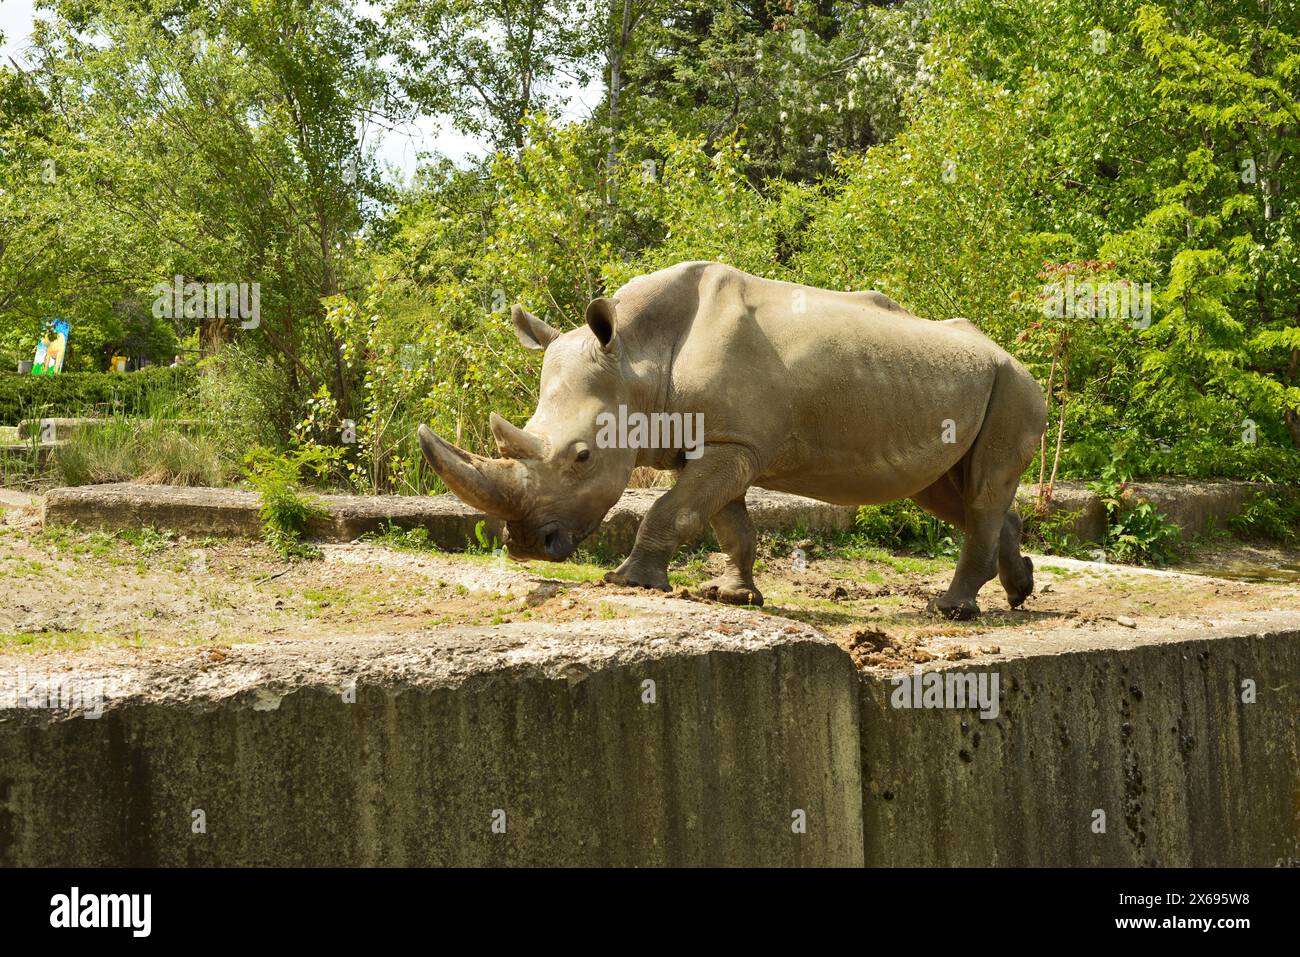 Männliches weißes Nashorn Ceratotherium simum gefährdetes Wildtier in Gefangenschaft im Zoo von Sofia, Sofia, Bulgarien, Osteuropa, Balkan, EU Stockfoto